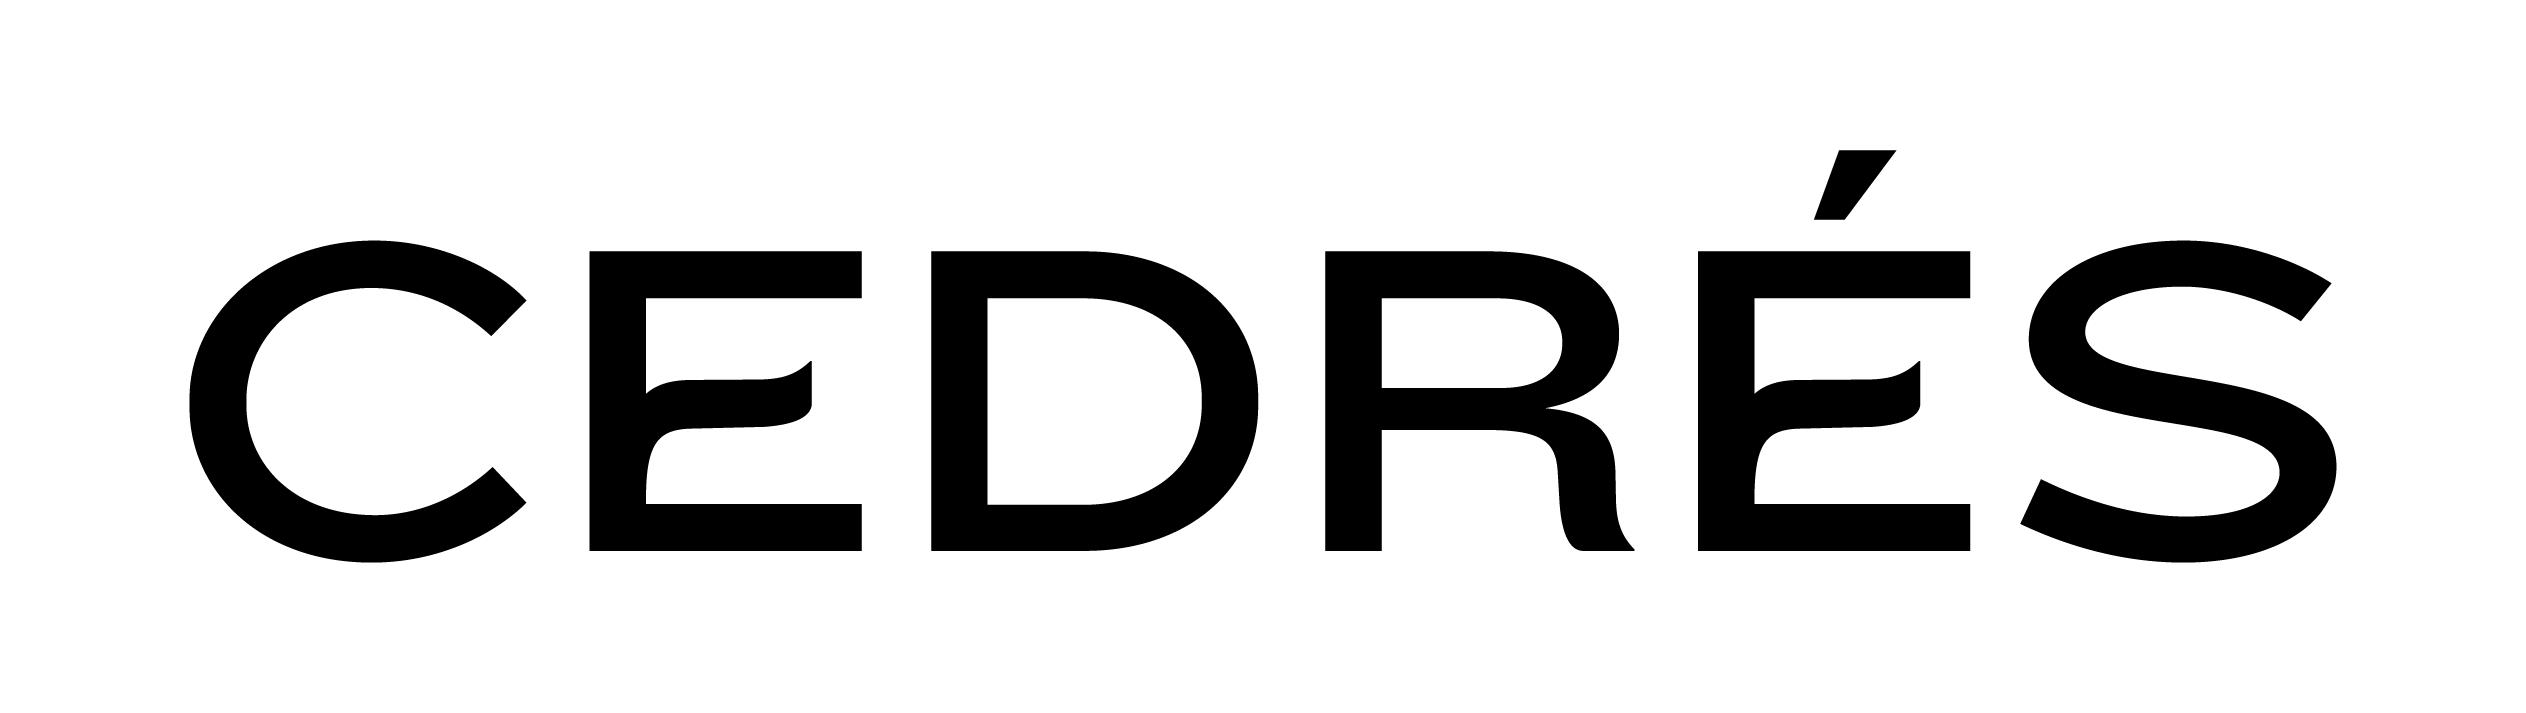 Logotipo Cedrés